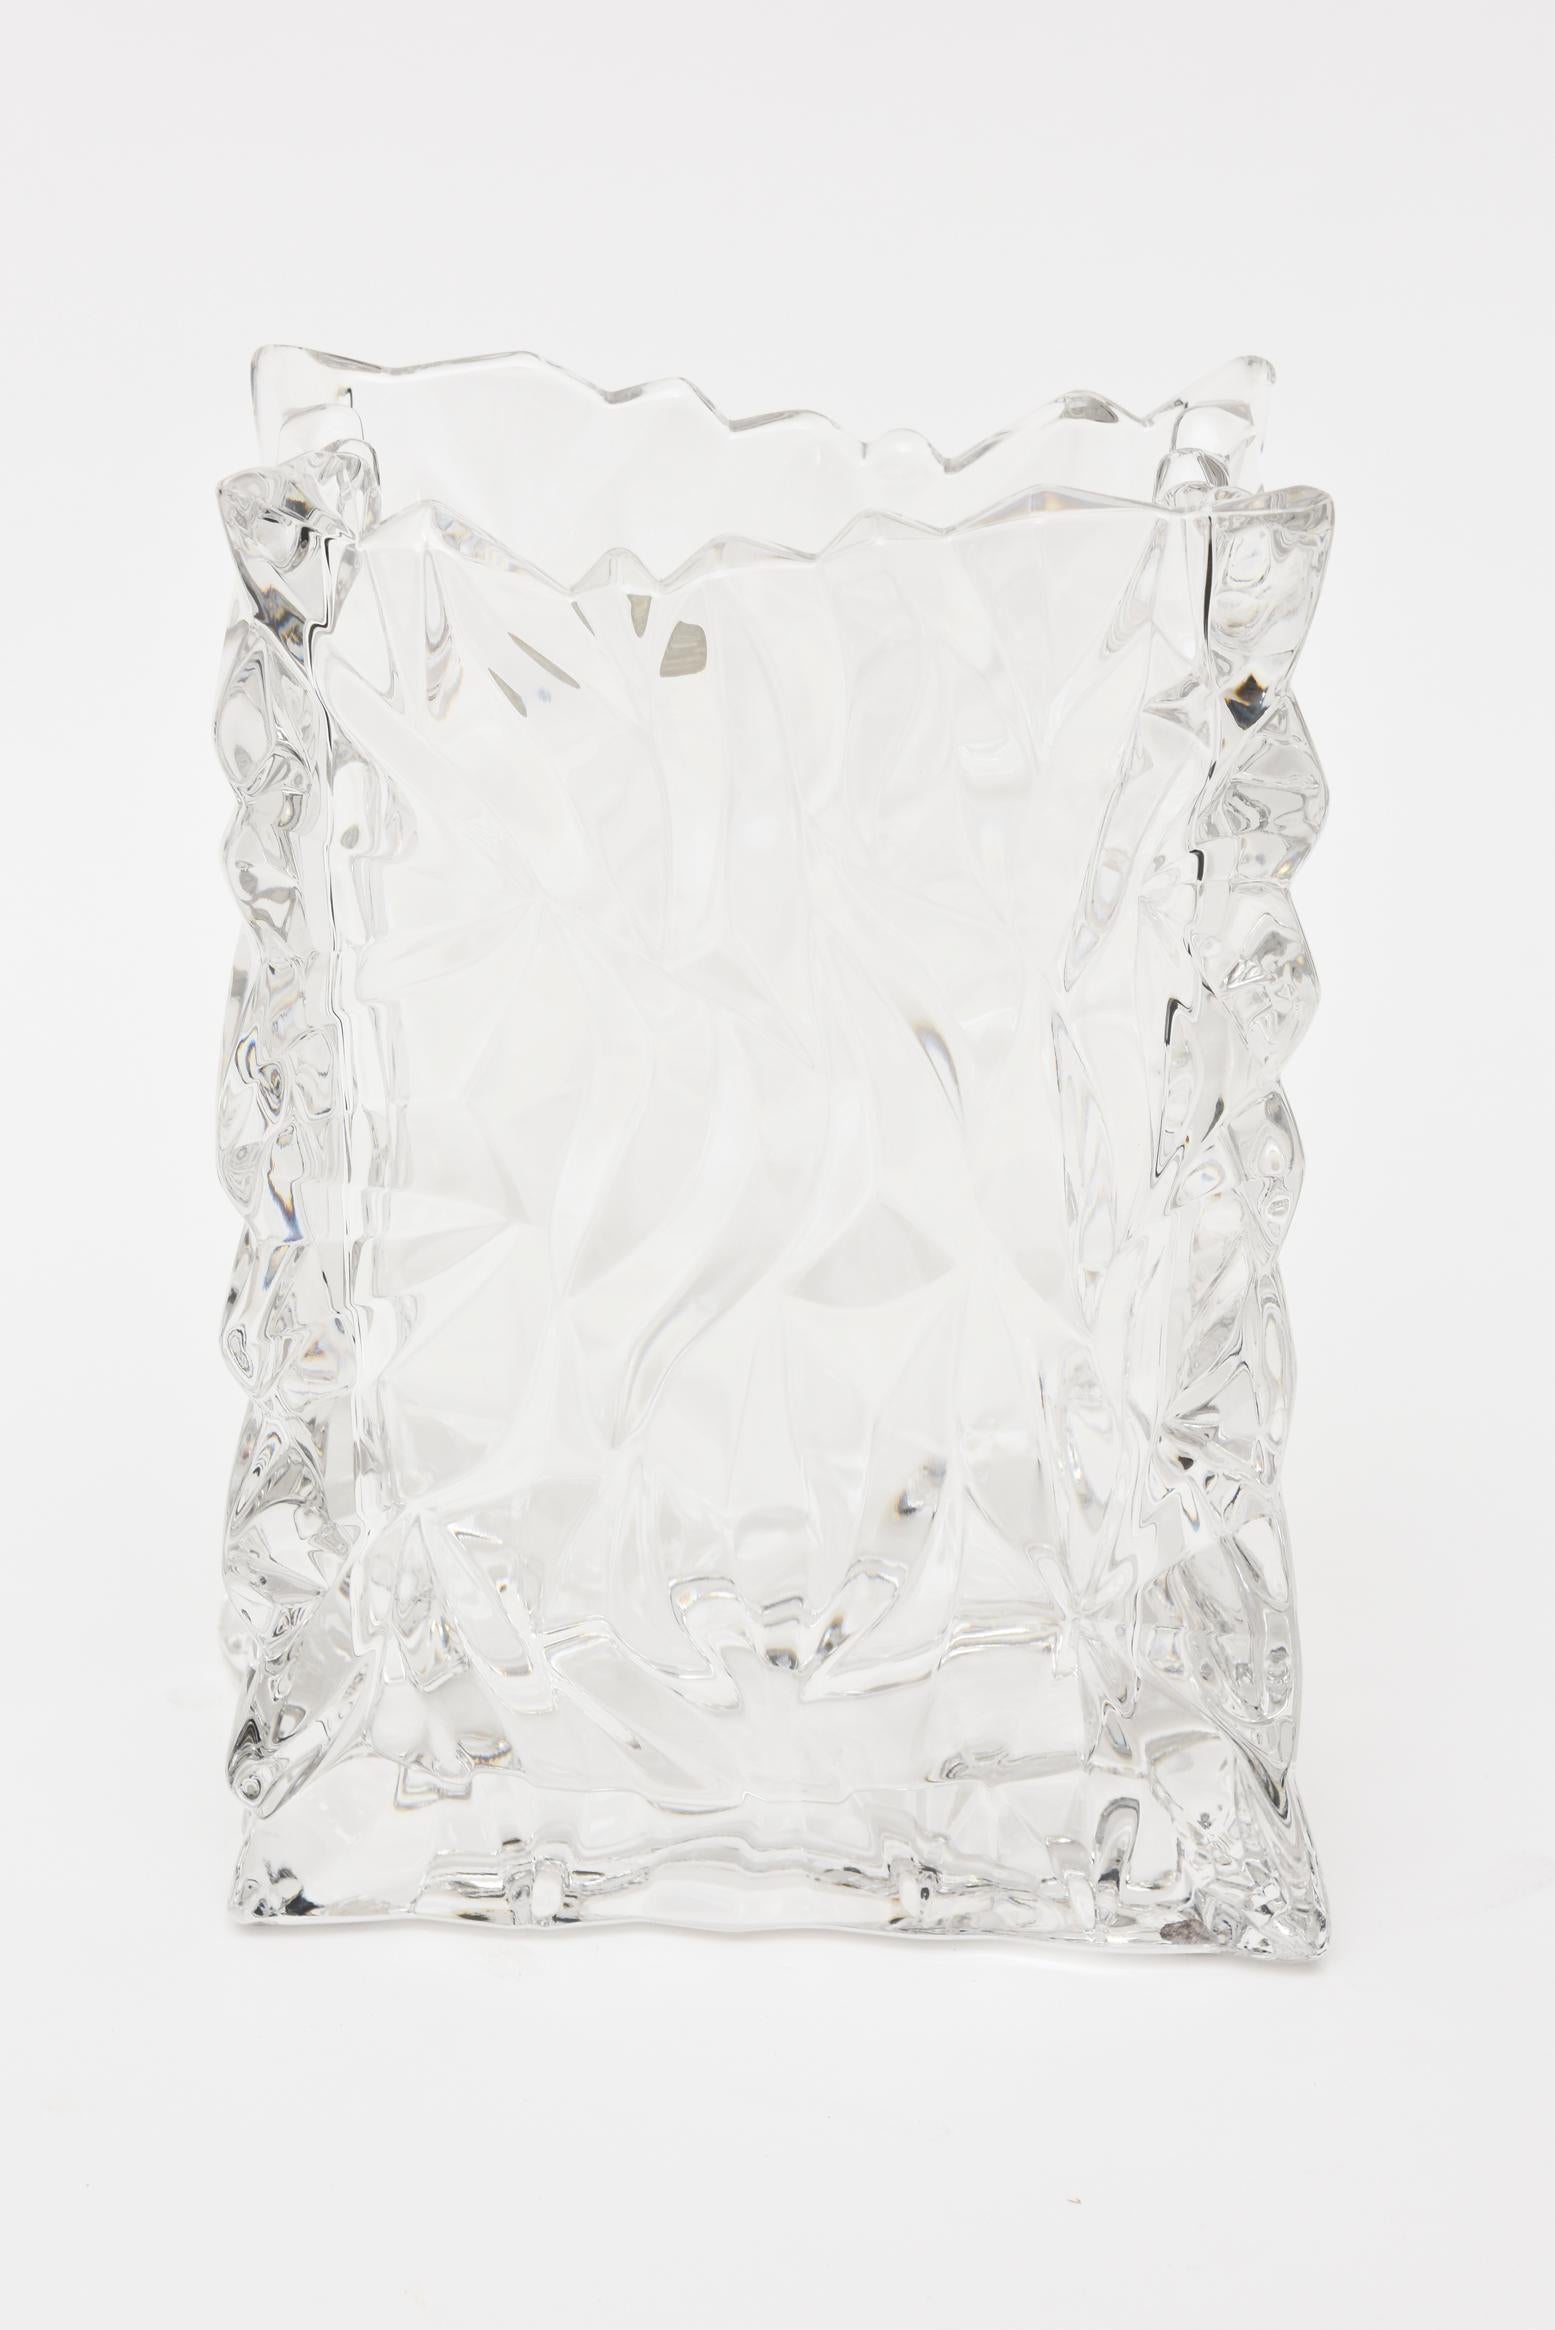 Ce vase texturé en verre de cristal au plomb est un produit de Rosenthal provenant de Studio Line Germany. Il s'agit de la forme sac en papier en cristal. Les jeux de lumière des formes de la surface sont magnifiques. Il est vintage, texturé et